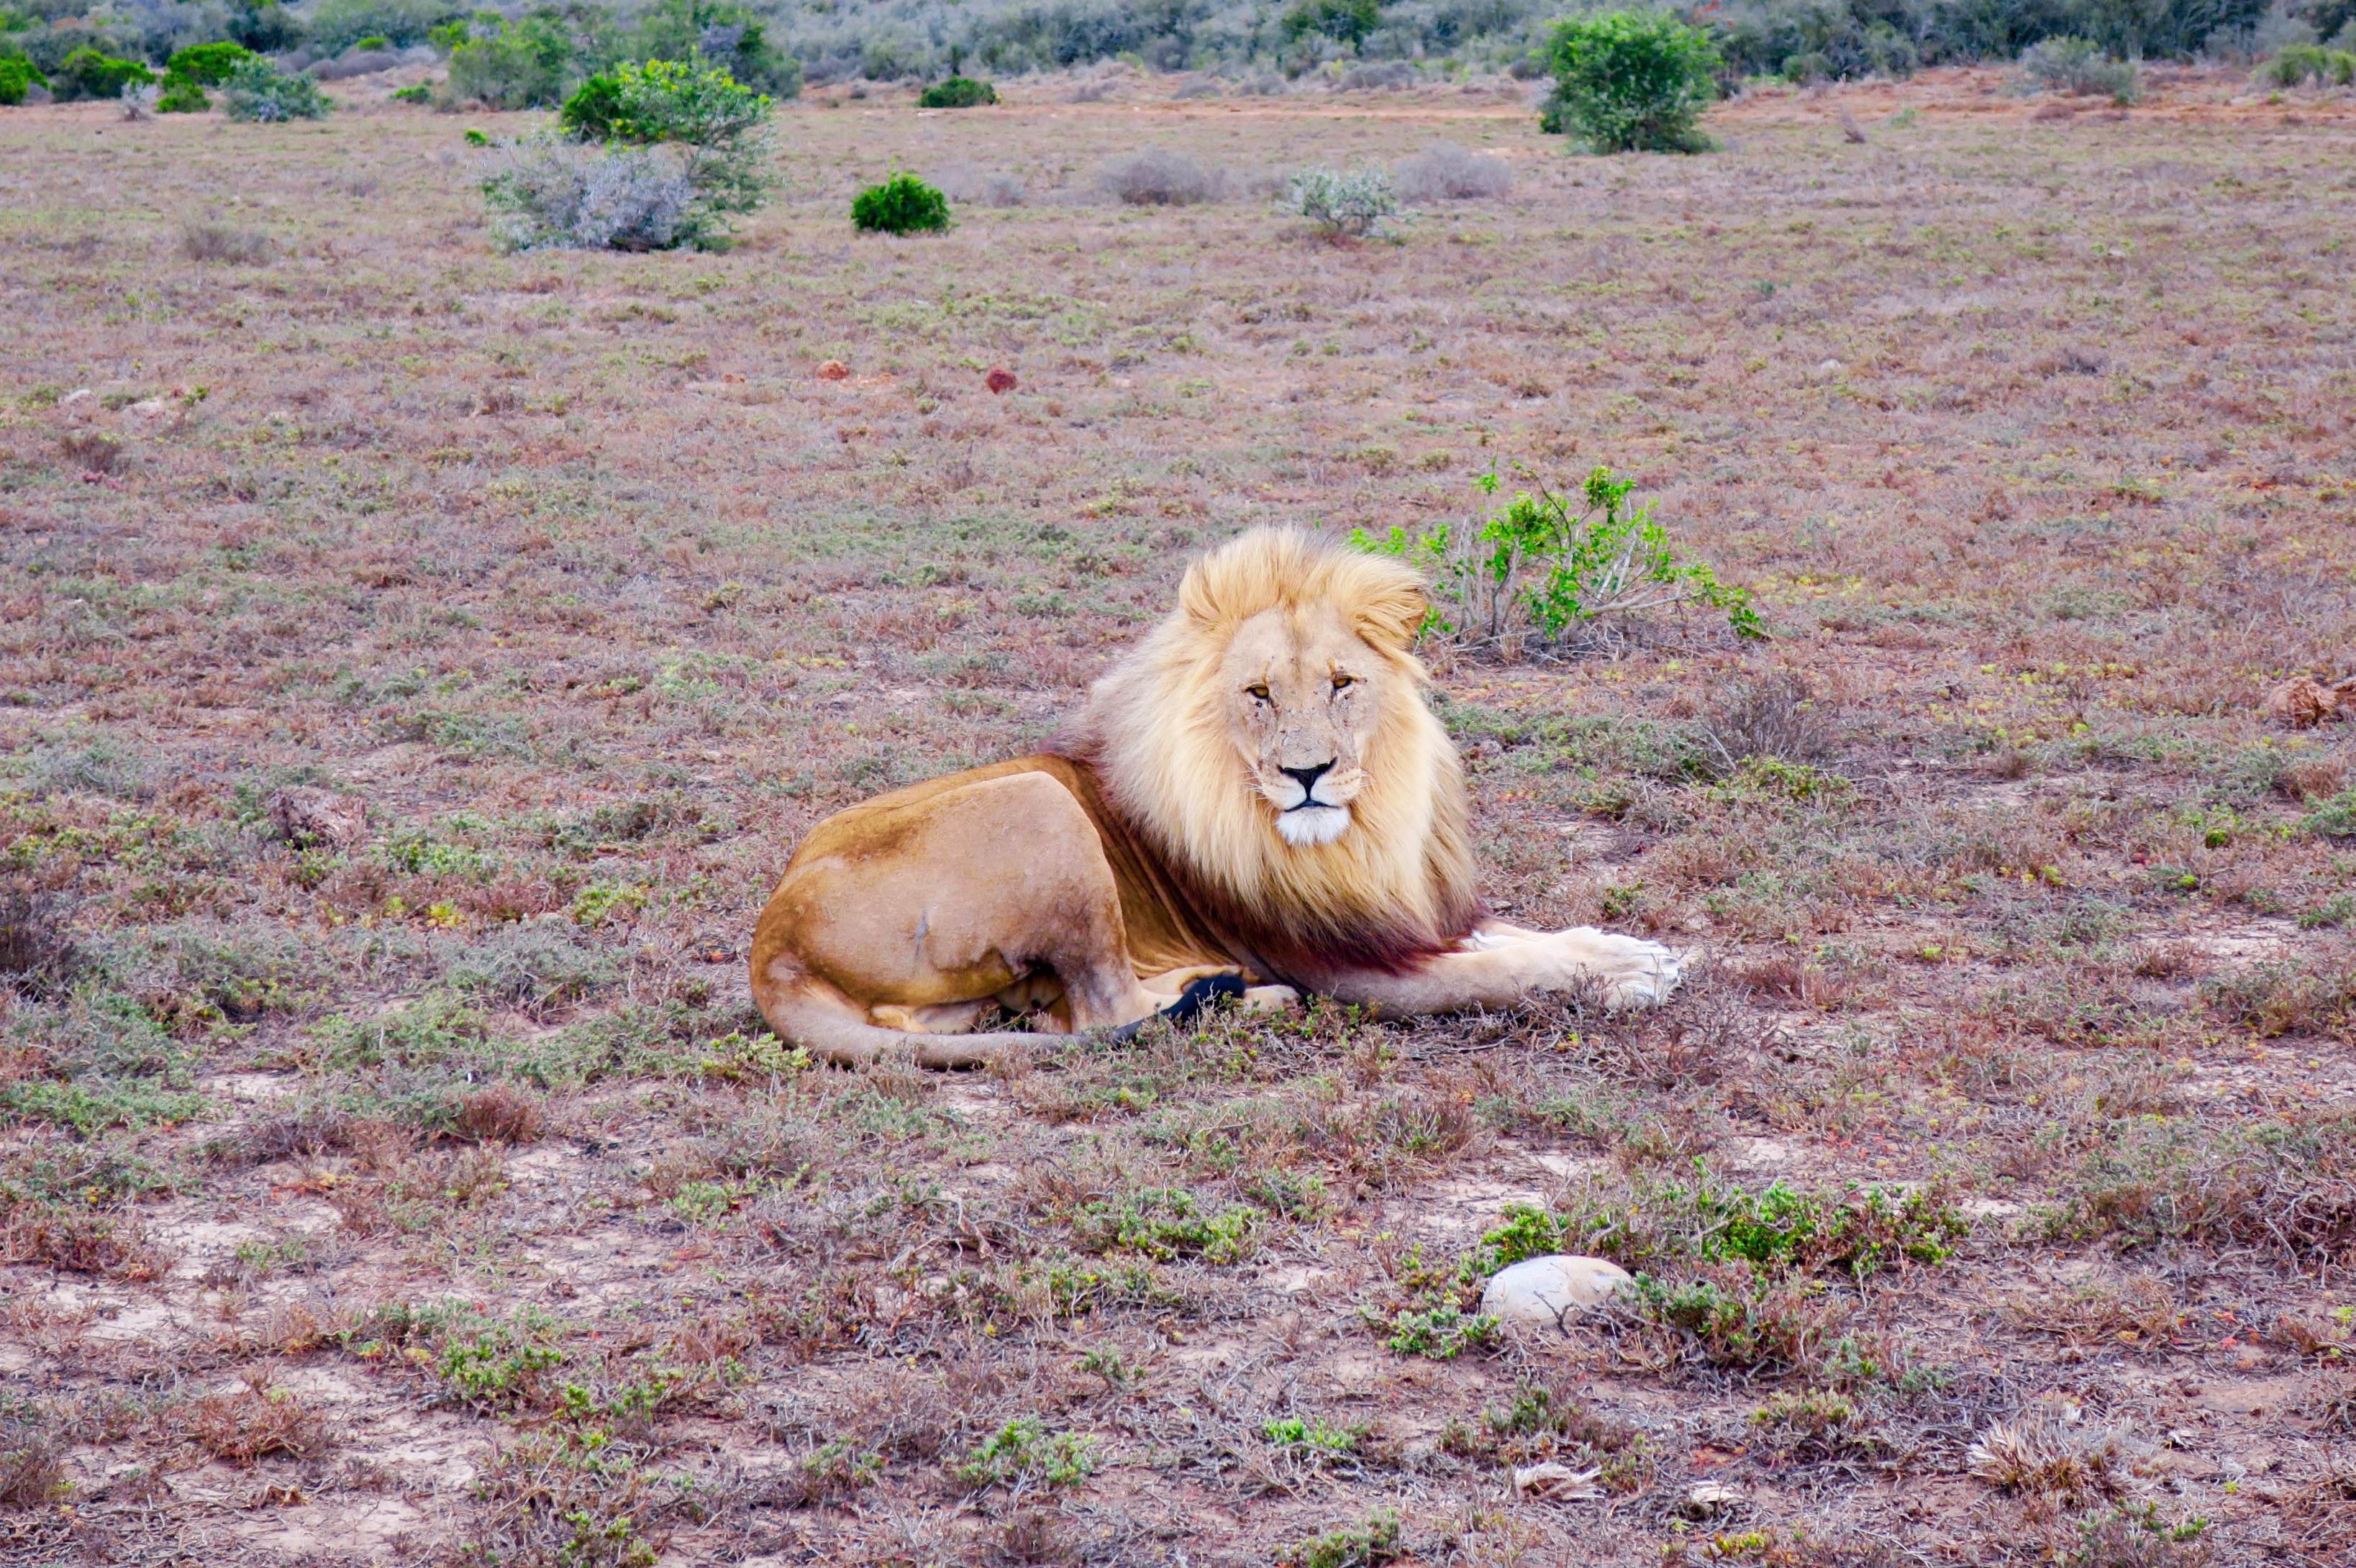 Lion striking a pose